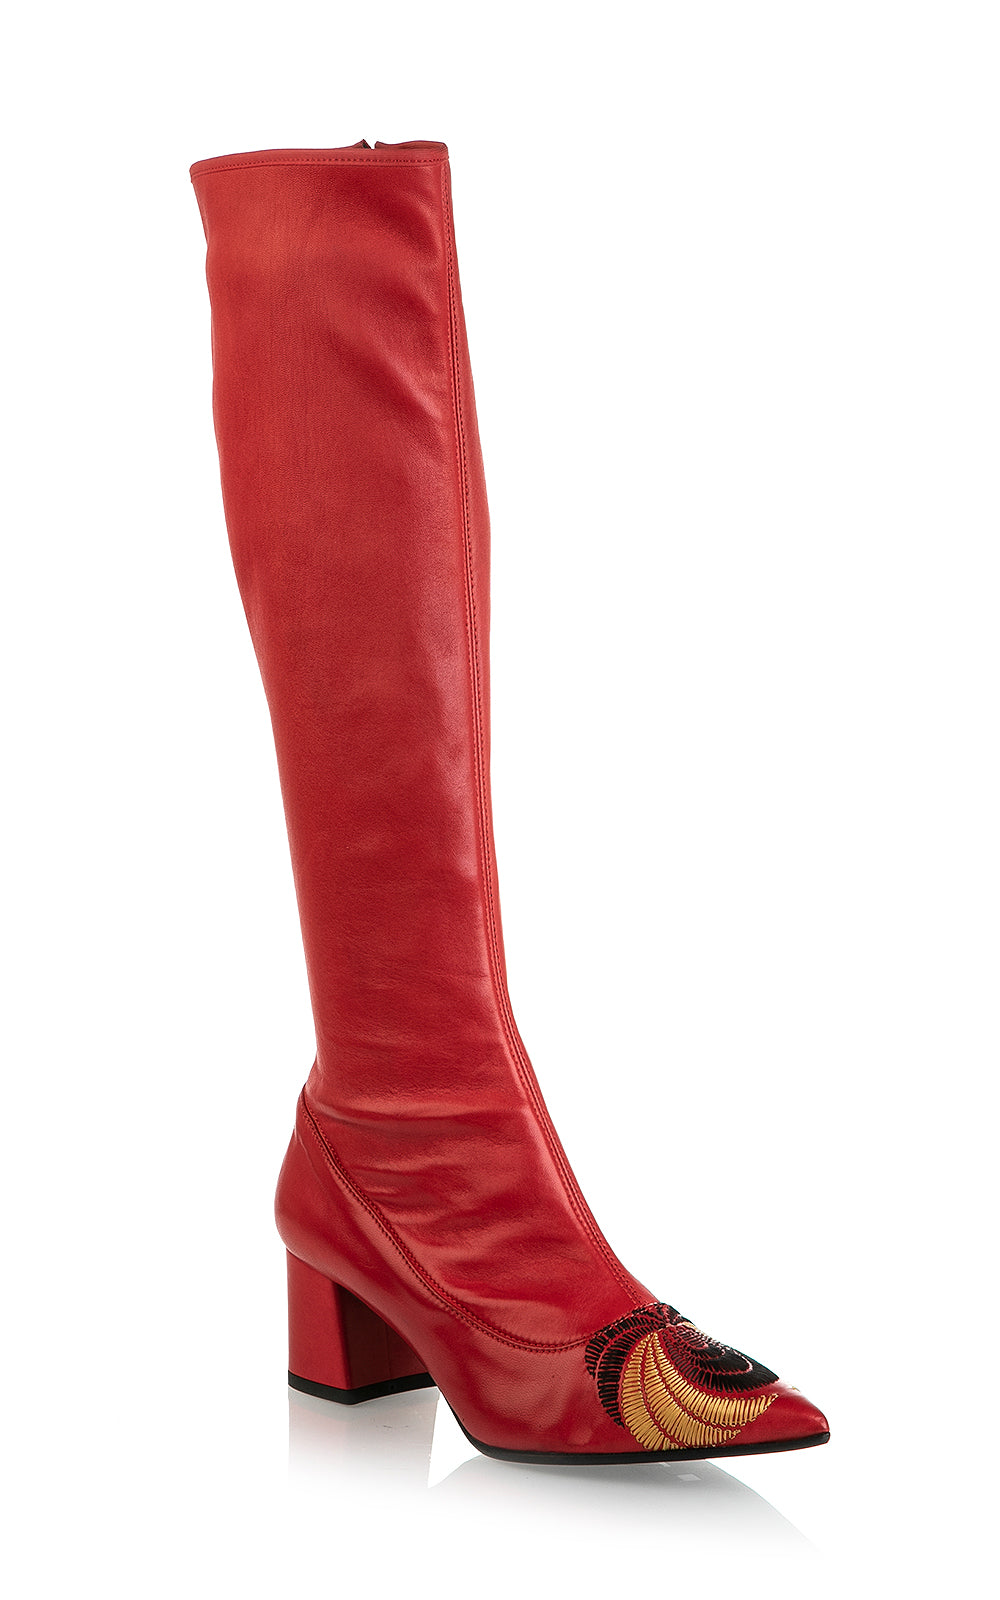 8043 Fiorangelo Boots / Red